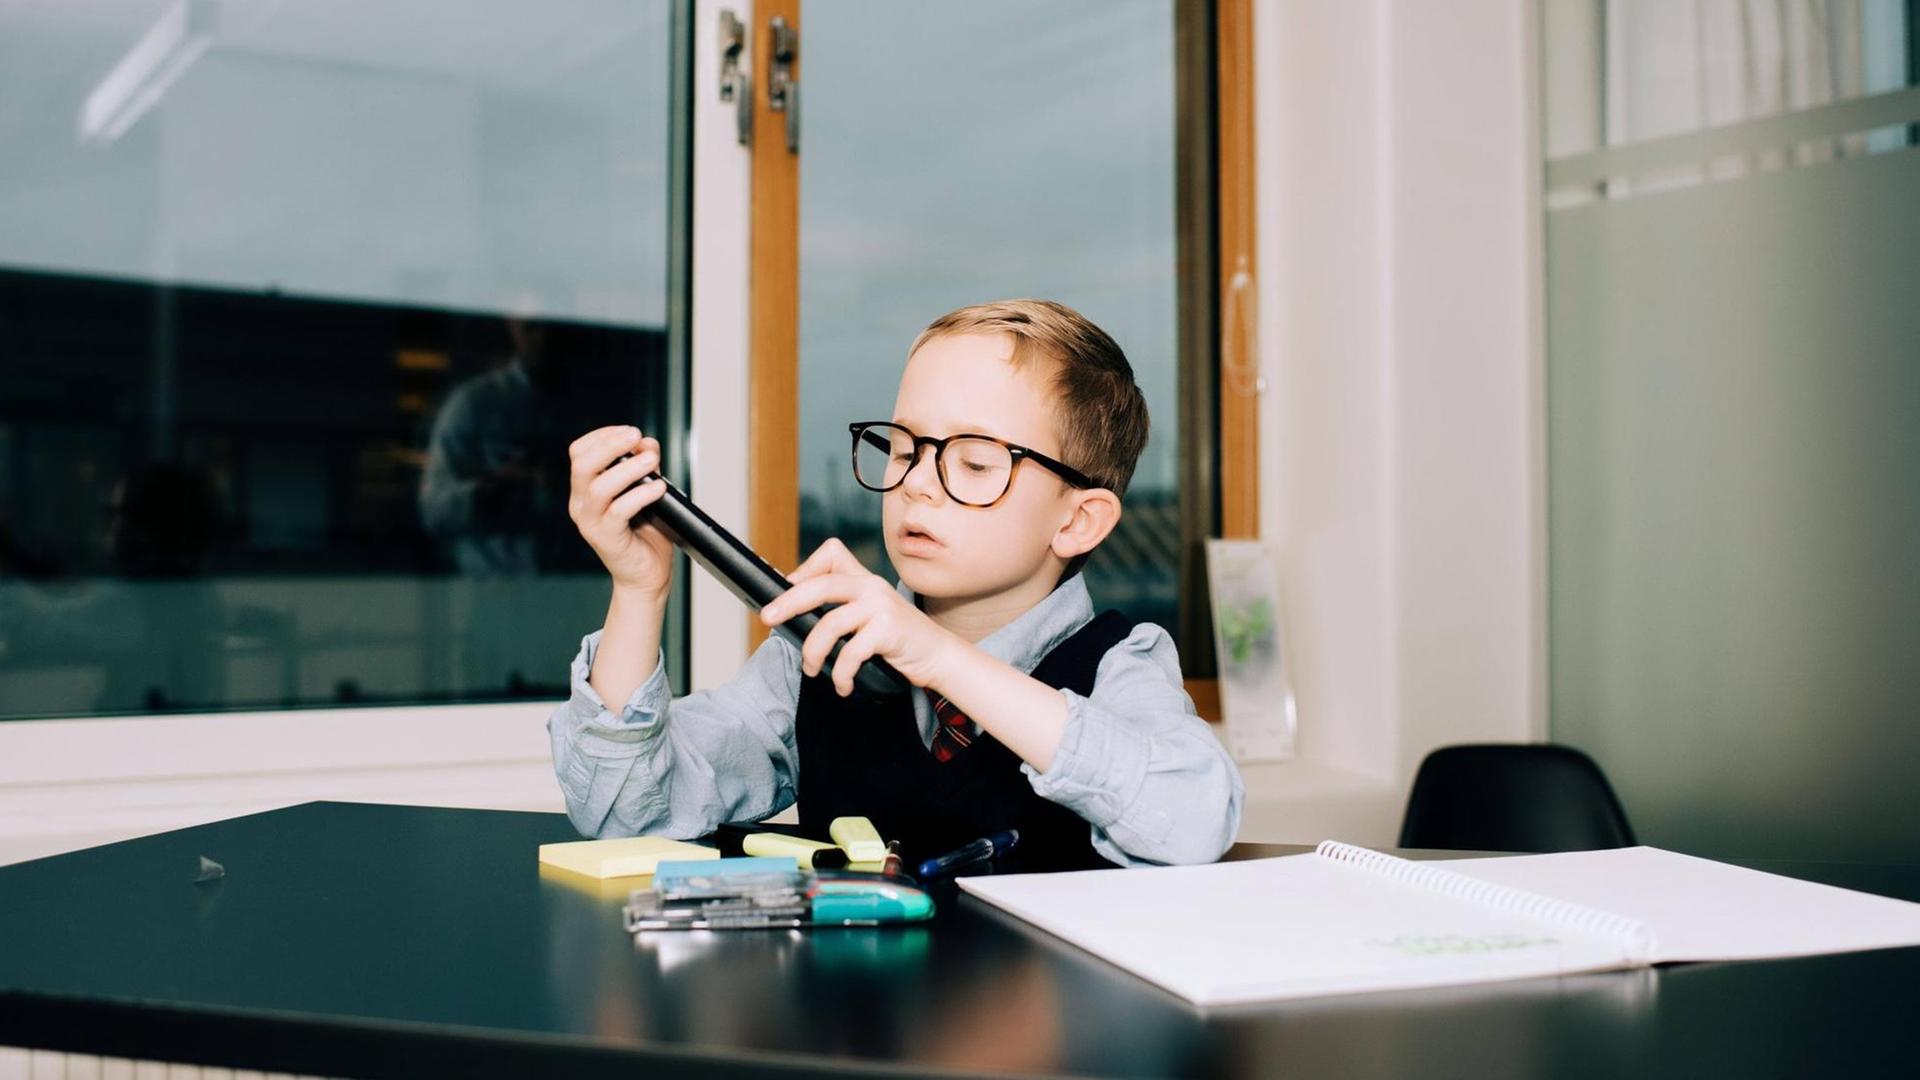 Ein Junge sitzt im Büro an einem Schreibtisch und sortiert Stifte.